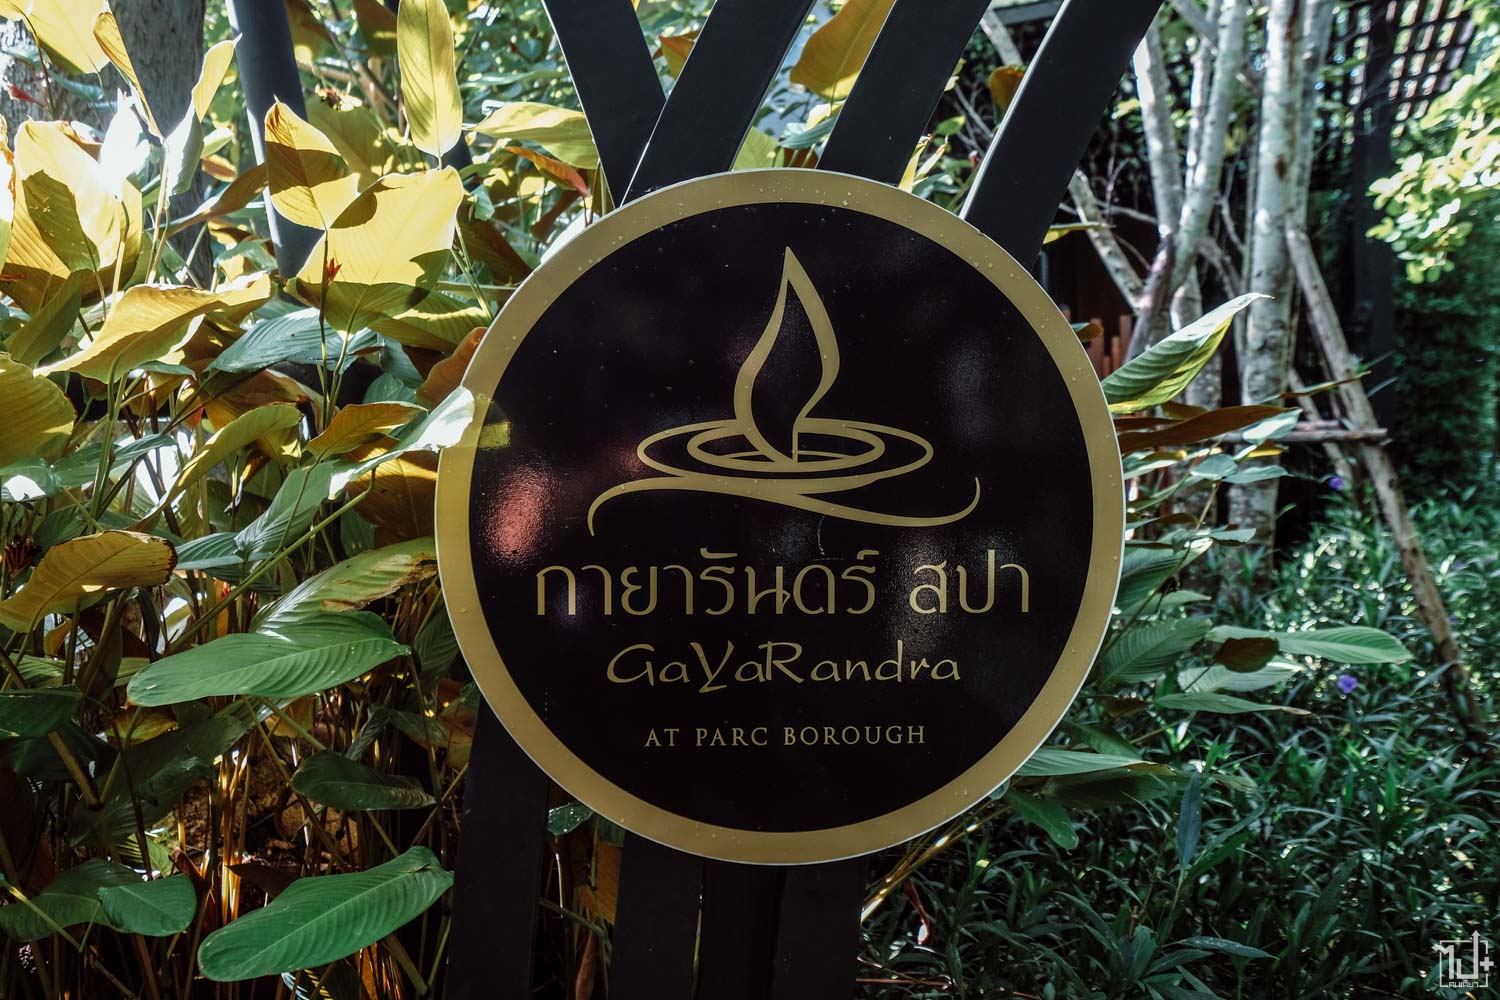 พาร์คโบโร่ซิตีรีสอร์ท, รีวิวเชียงใหม่, เชียงใหม่, ที่เที่ยวเชียงใหม่, ที่พักเชียงใหม่, ParcBoroughCityResort, Chiangmai